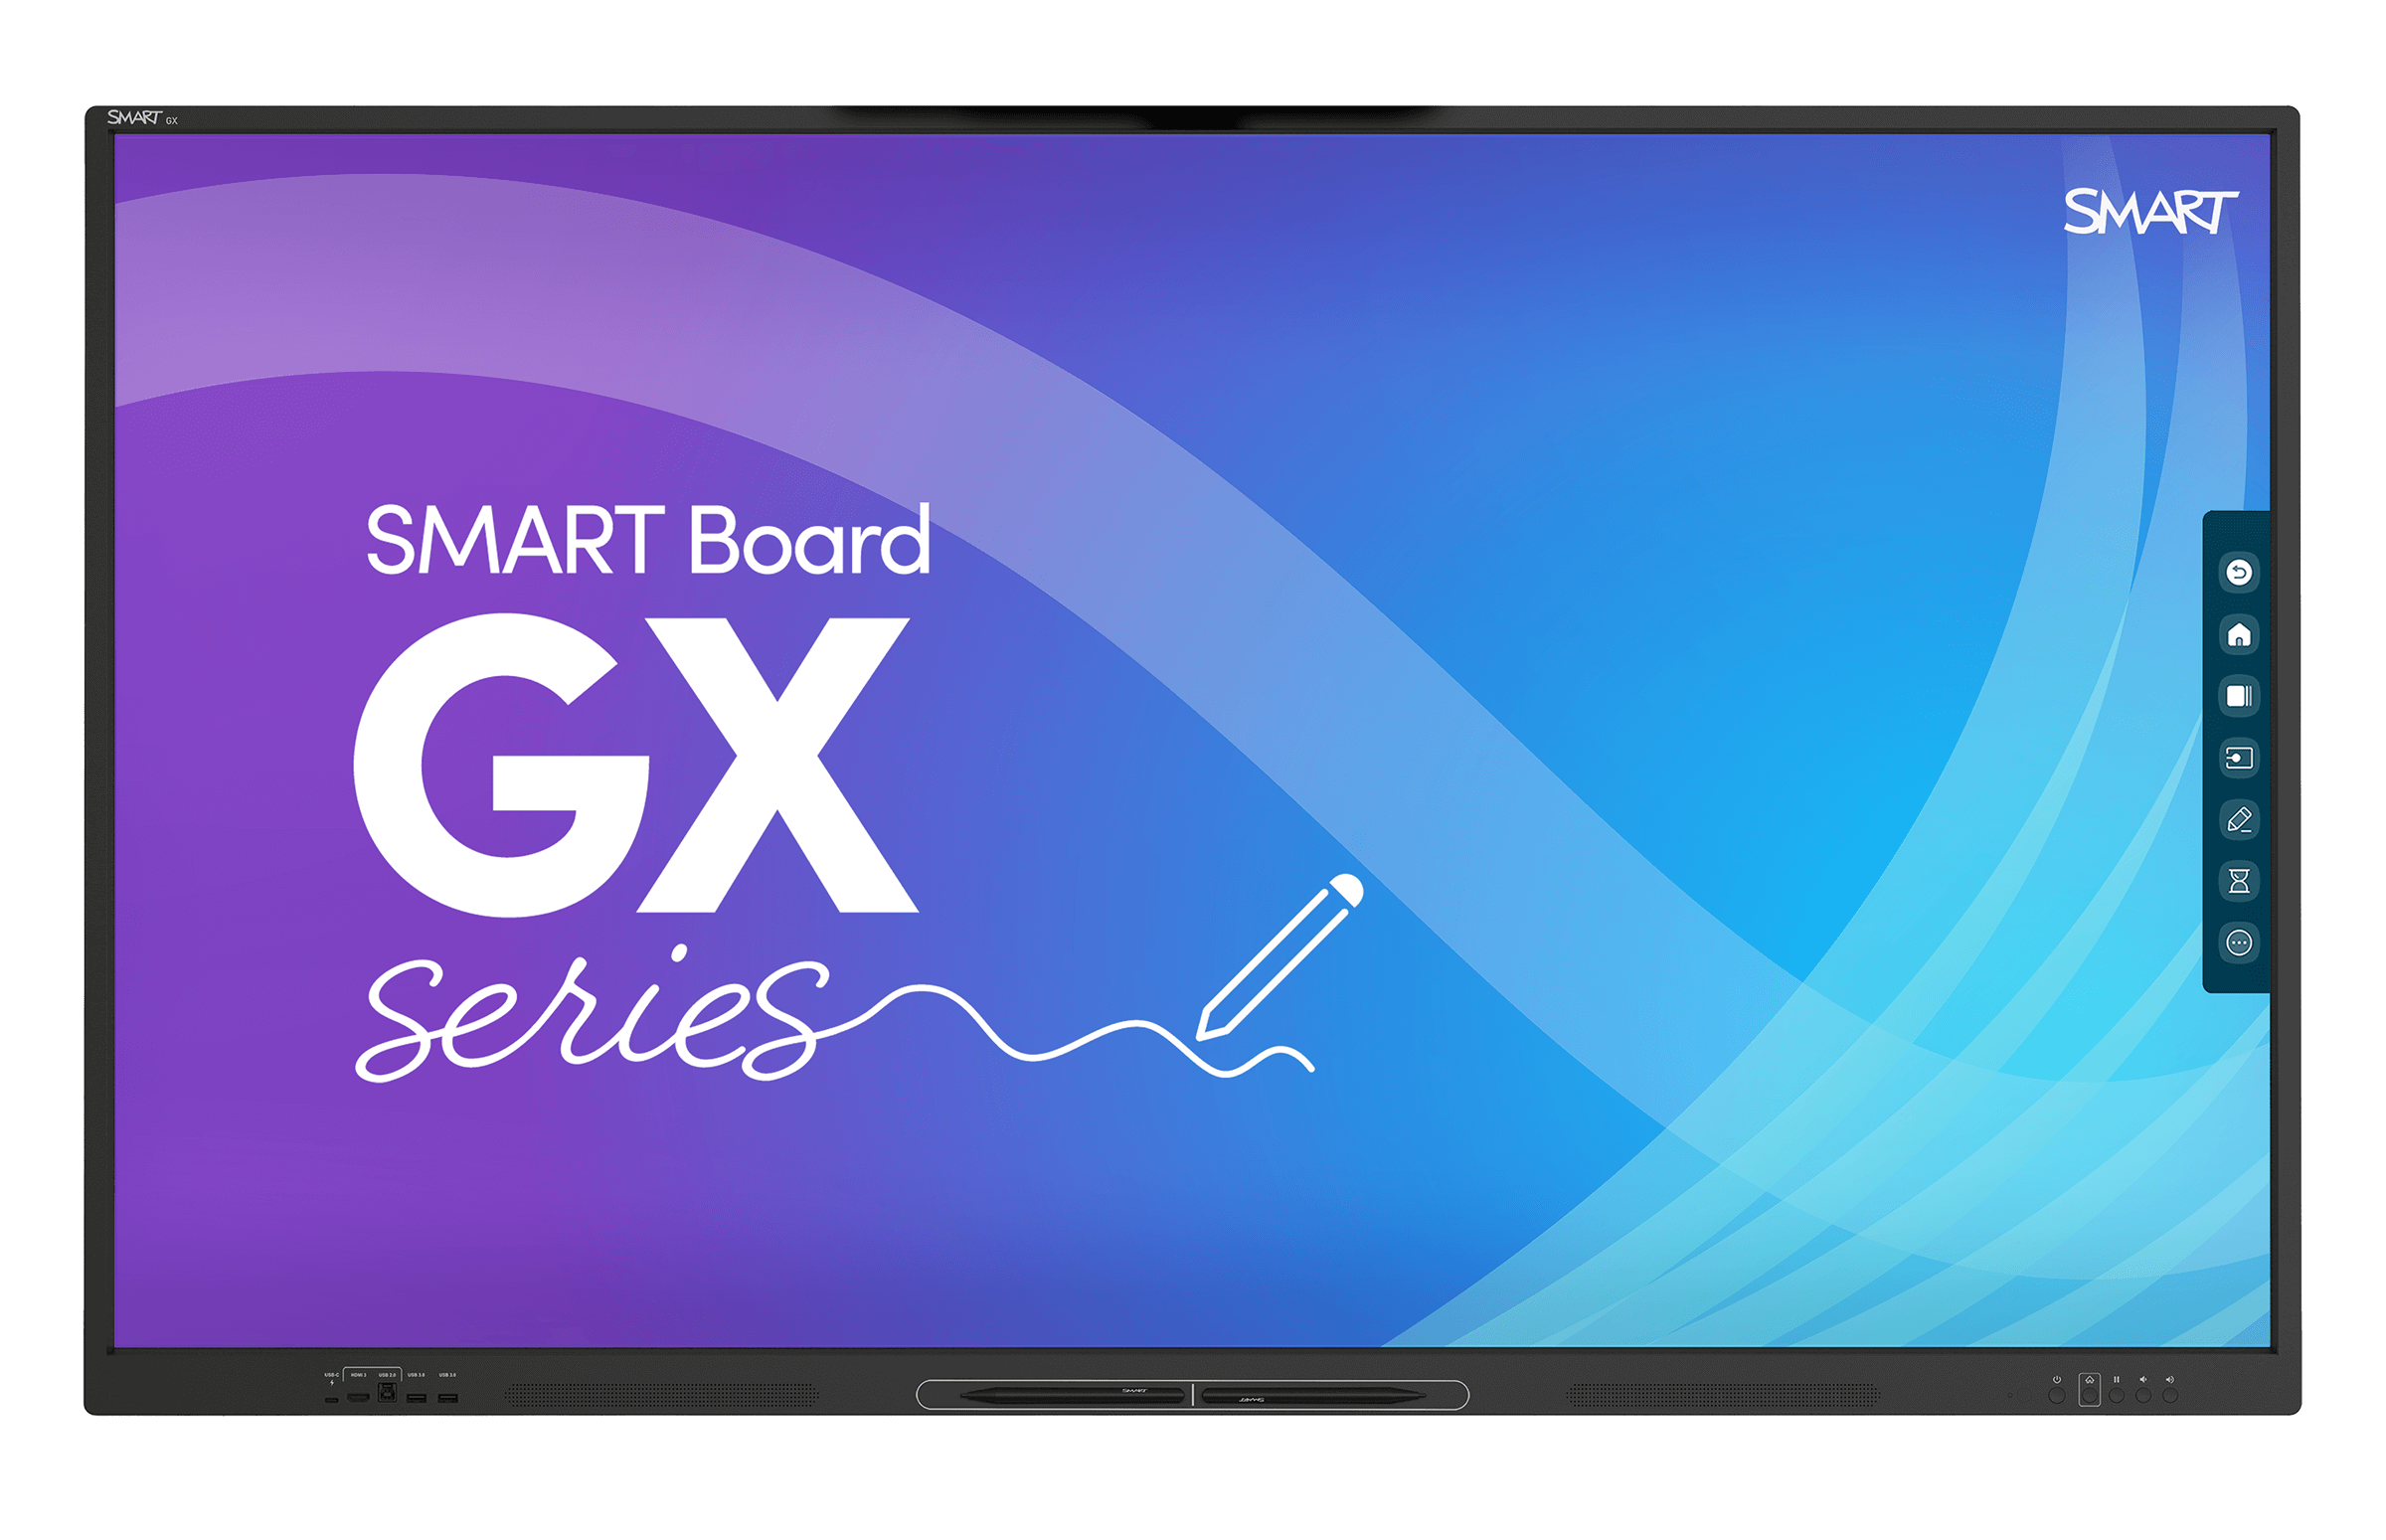 Monitor interaktywny SMART GX165 V2 – najpopularniejszy monitor interaktywny do szkoły